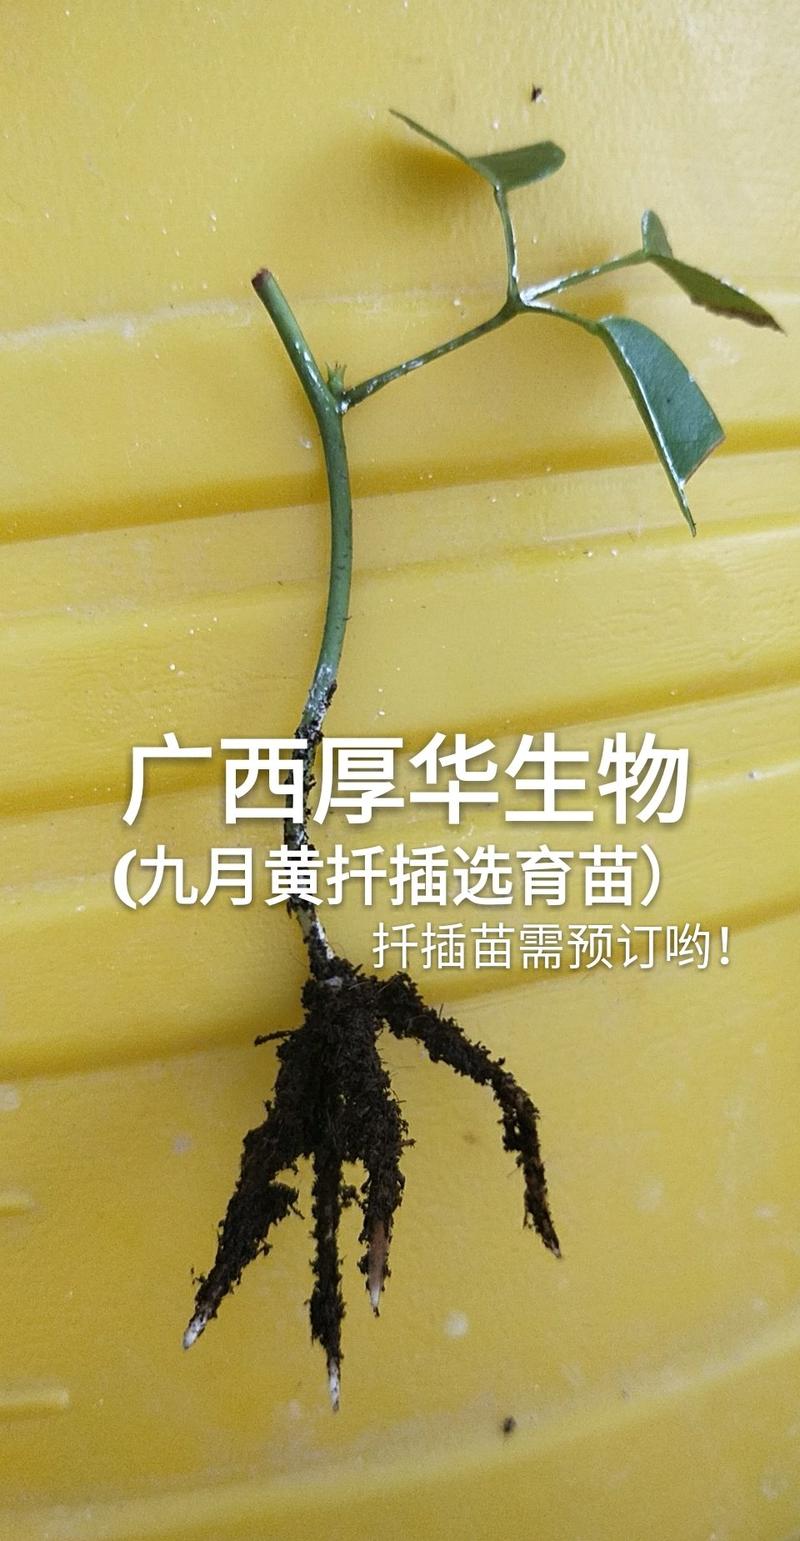 华俄航育1号九月黄软籽香甜品种~食客欢迎的好品种！